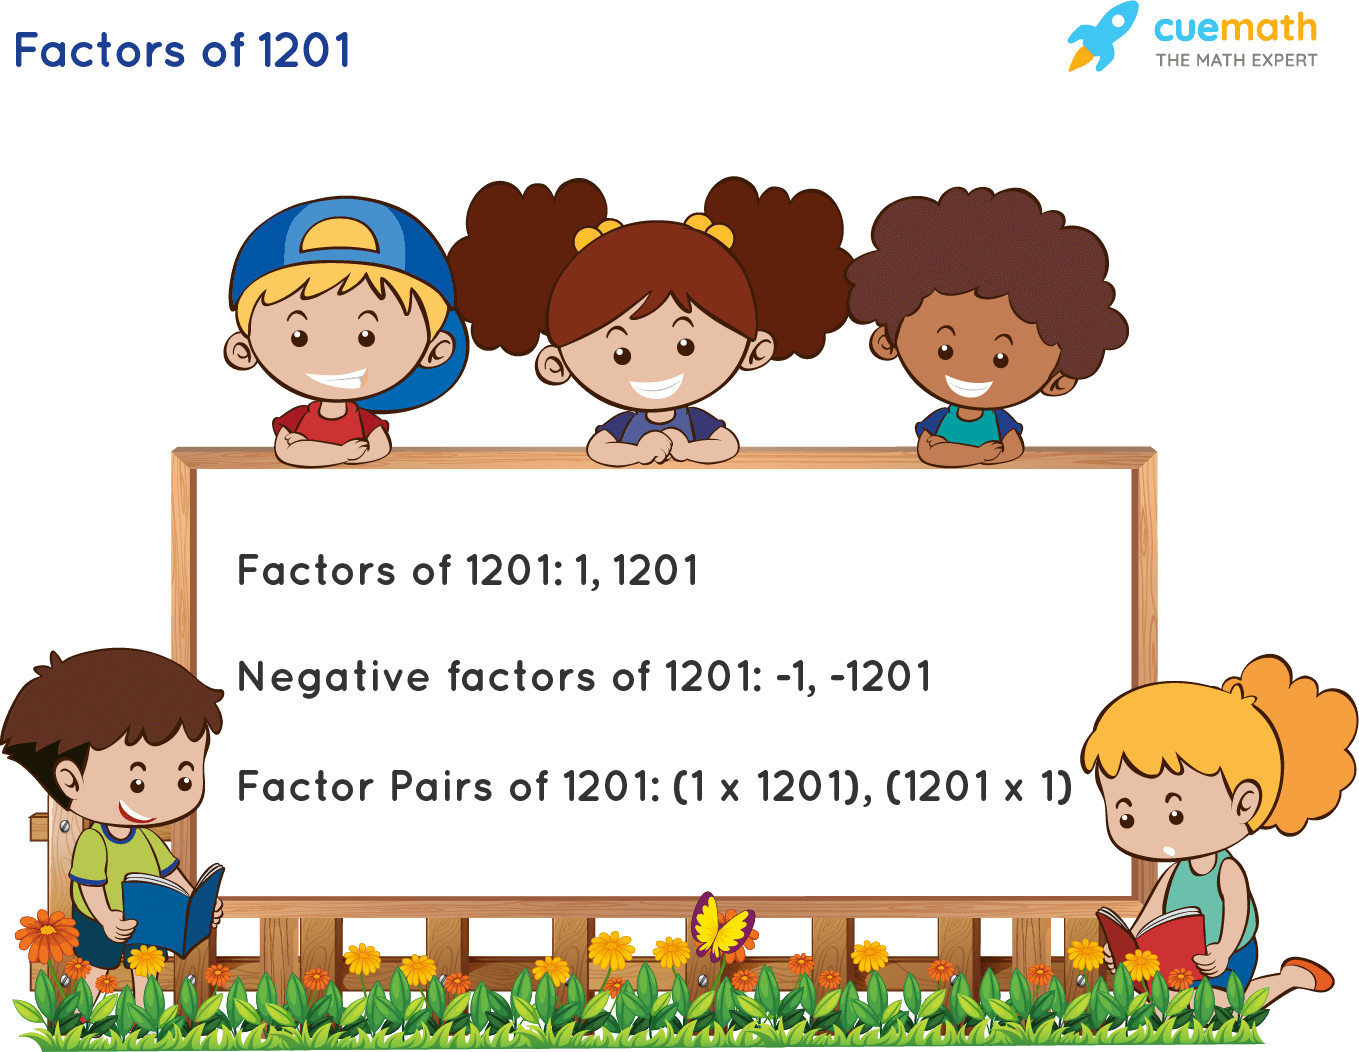 Factors of 1201